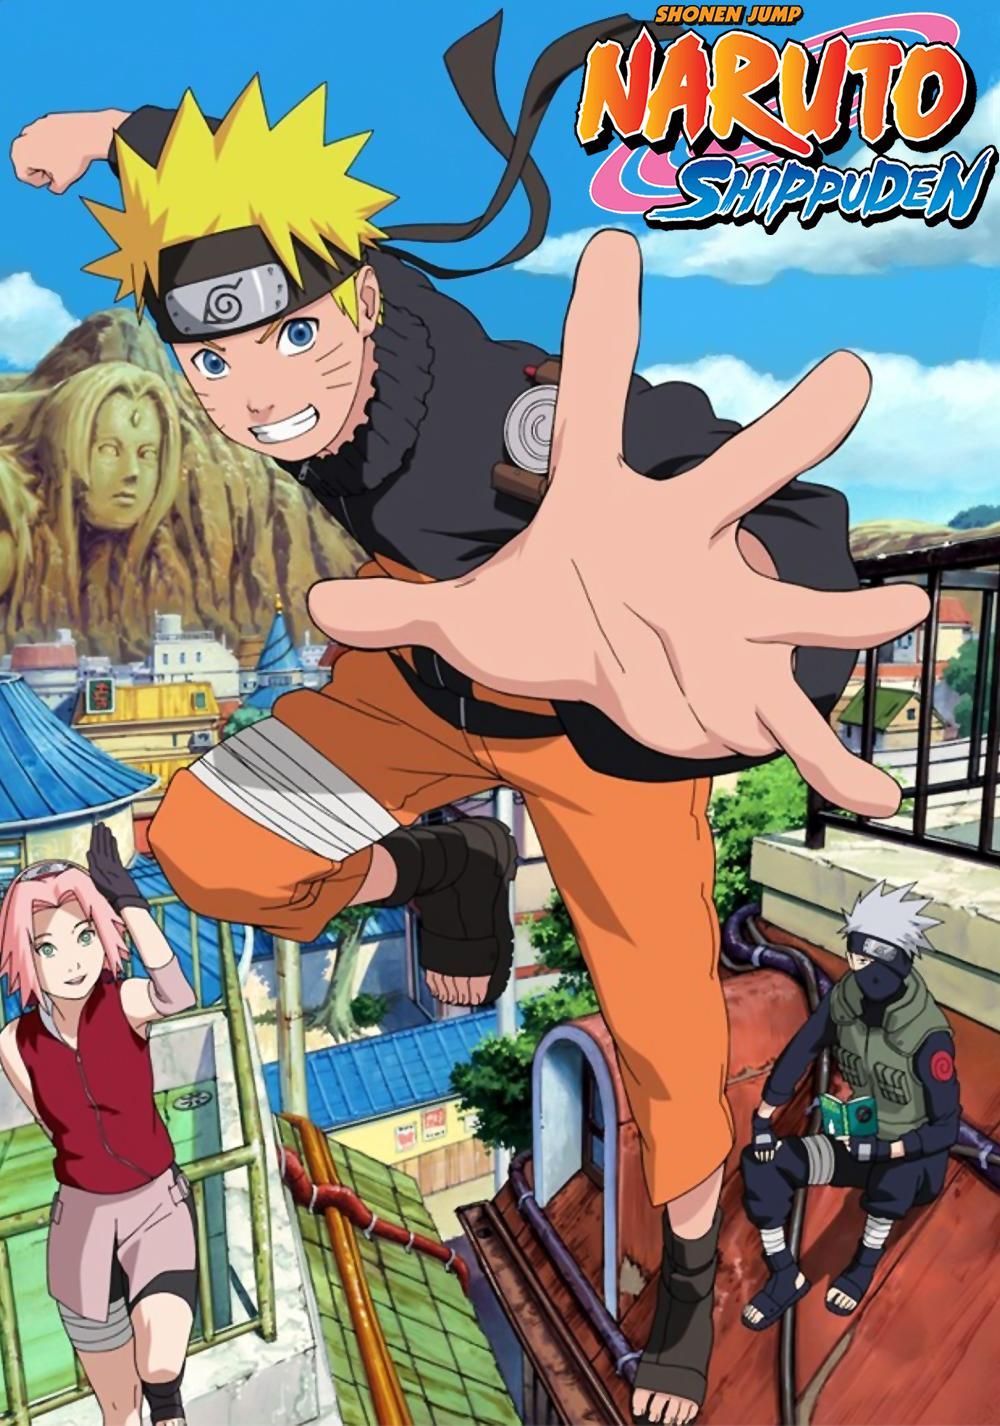 Rinnegan Sharingan Byakugan Naruto Uchiha Anime Poster